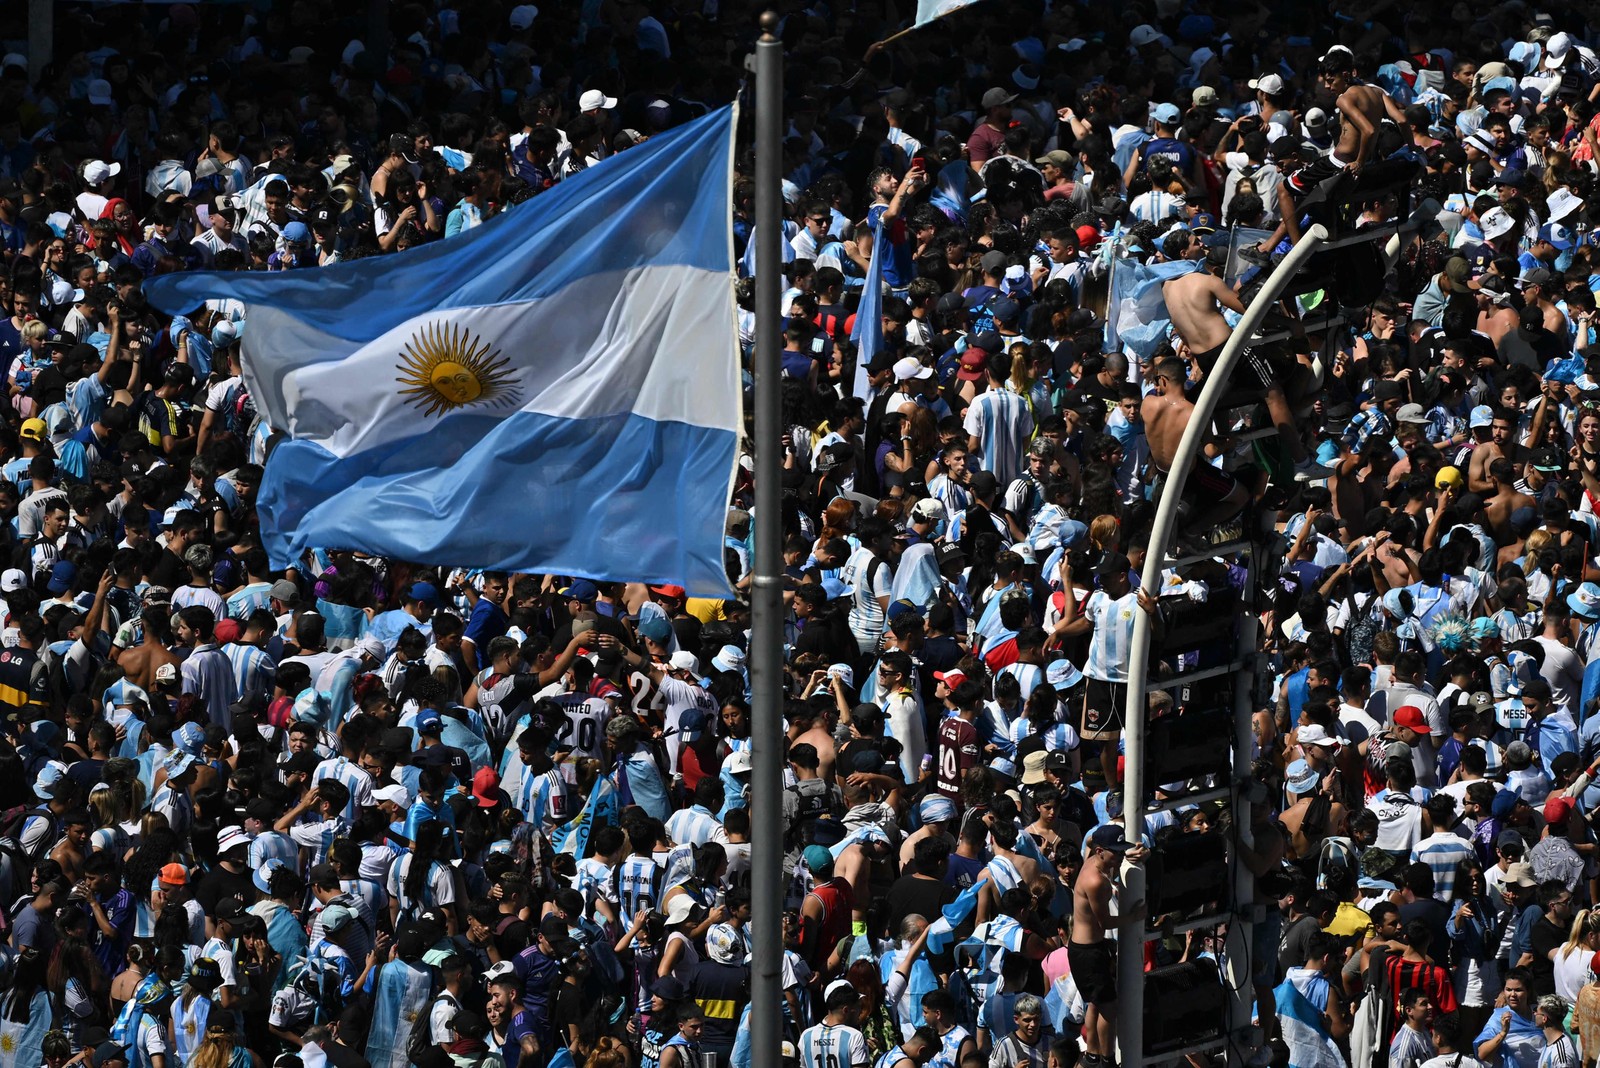 orcedores da Argentina esperam o ônibus com os jogadores da Argentina para passar pelo Obelisco para comemorar após vencer a Copa do Mundo do Catar 2022 em Buenos Aires — Foto: Luis ROBAYO / AFP